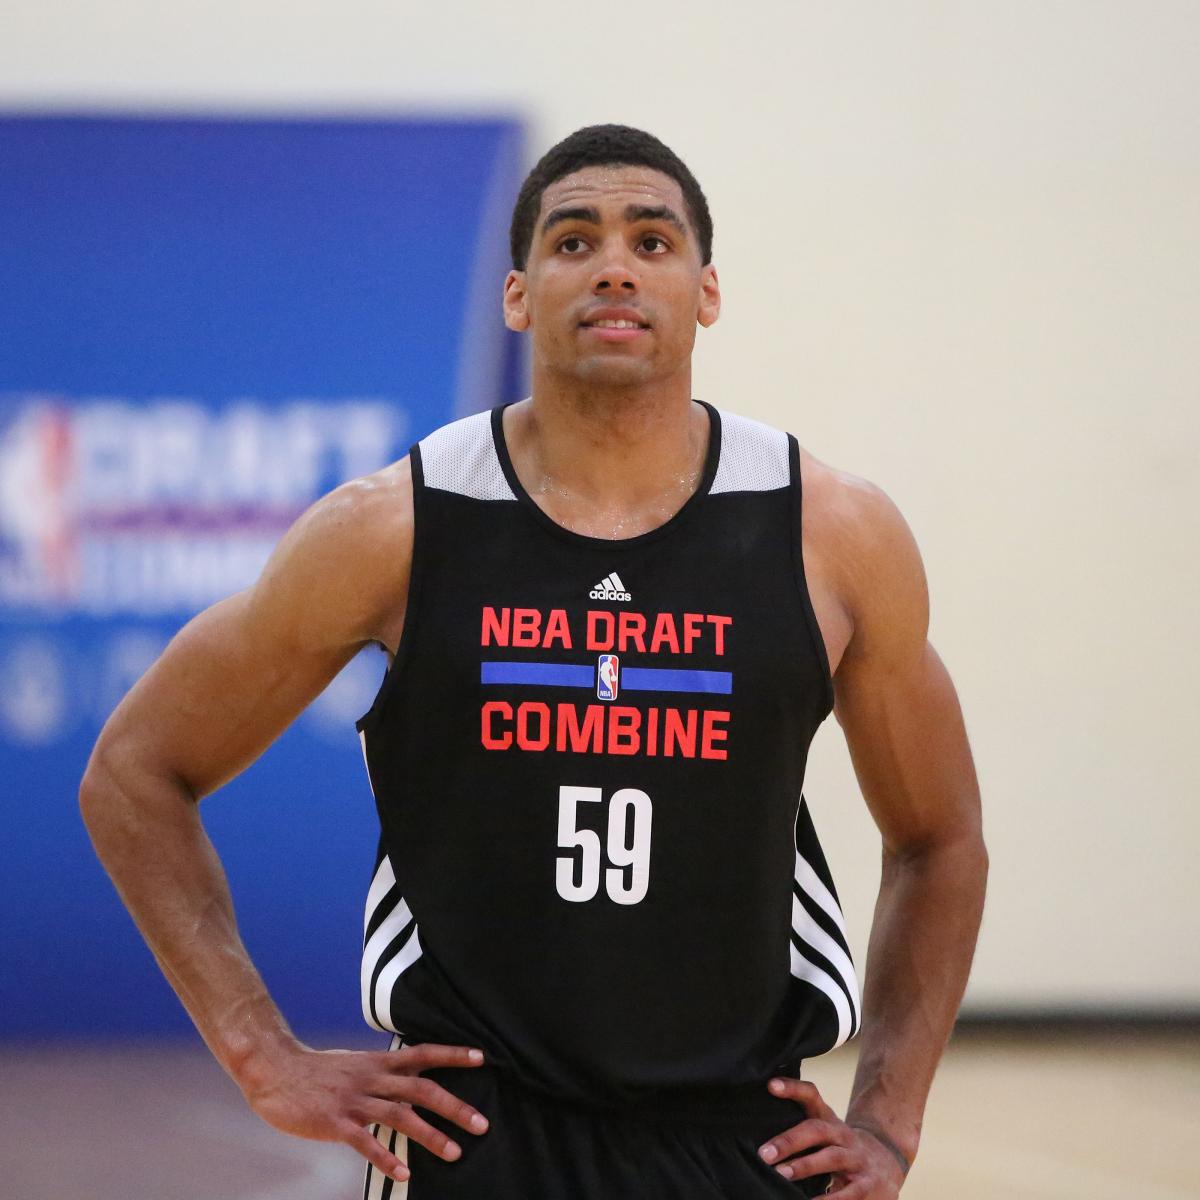 McAdoo declares for NBA draft after junior year at North Carolina